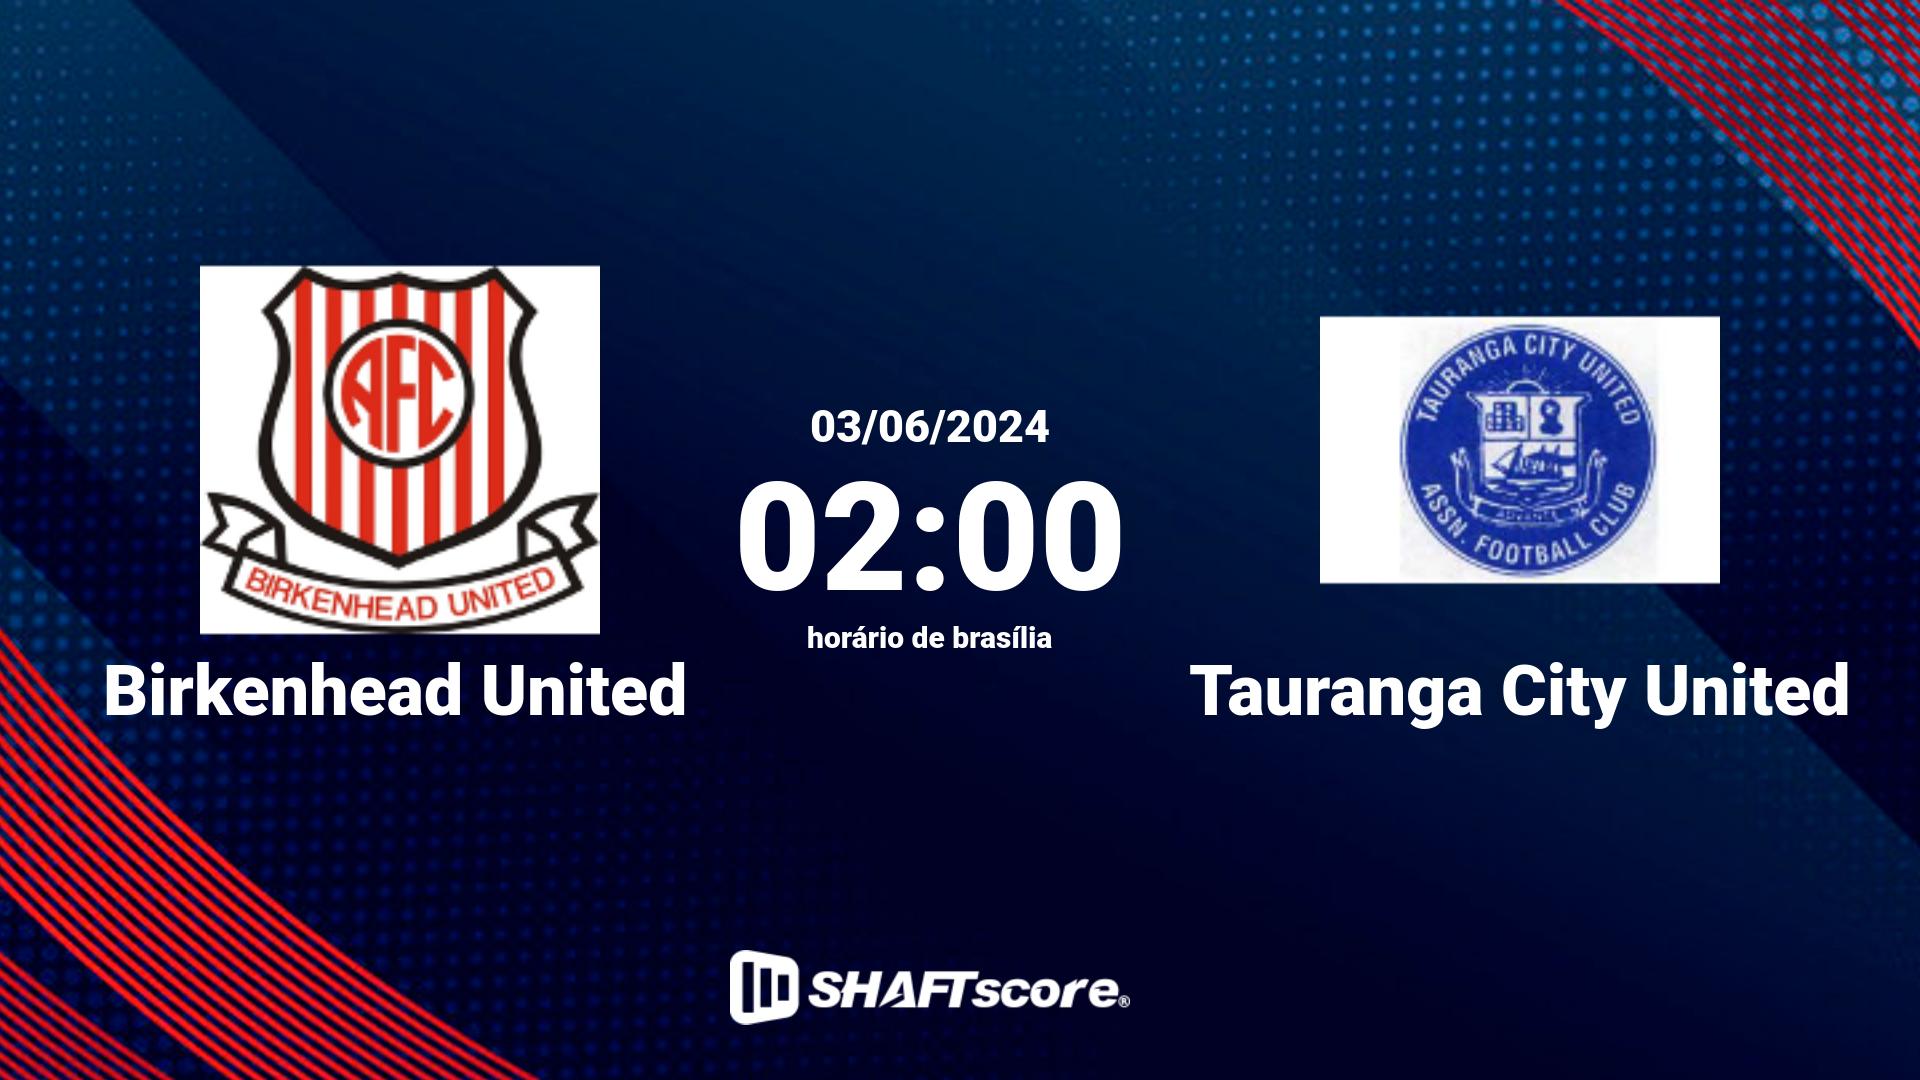 Estatísticas do jogo Birkenhead United vs Tauranga City United 03.06 02:00